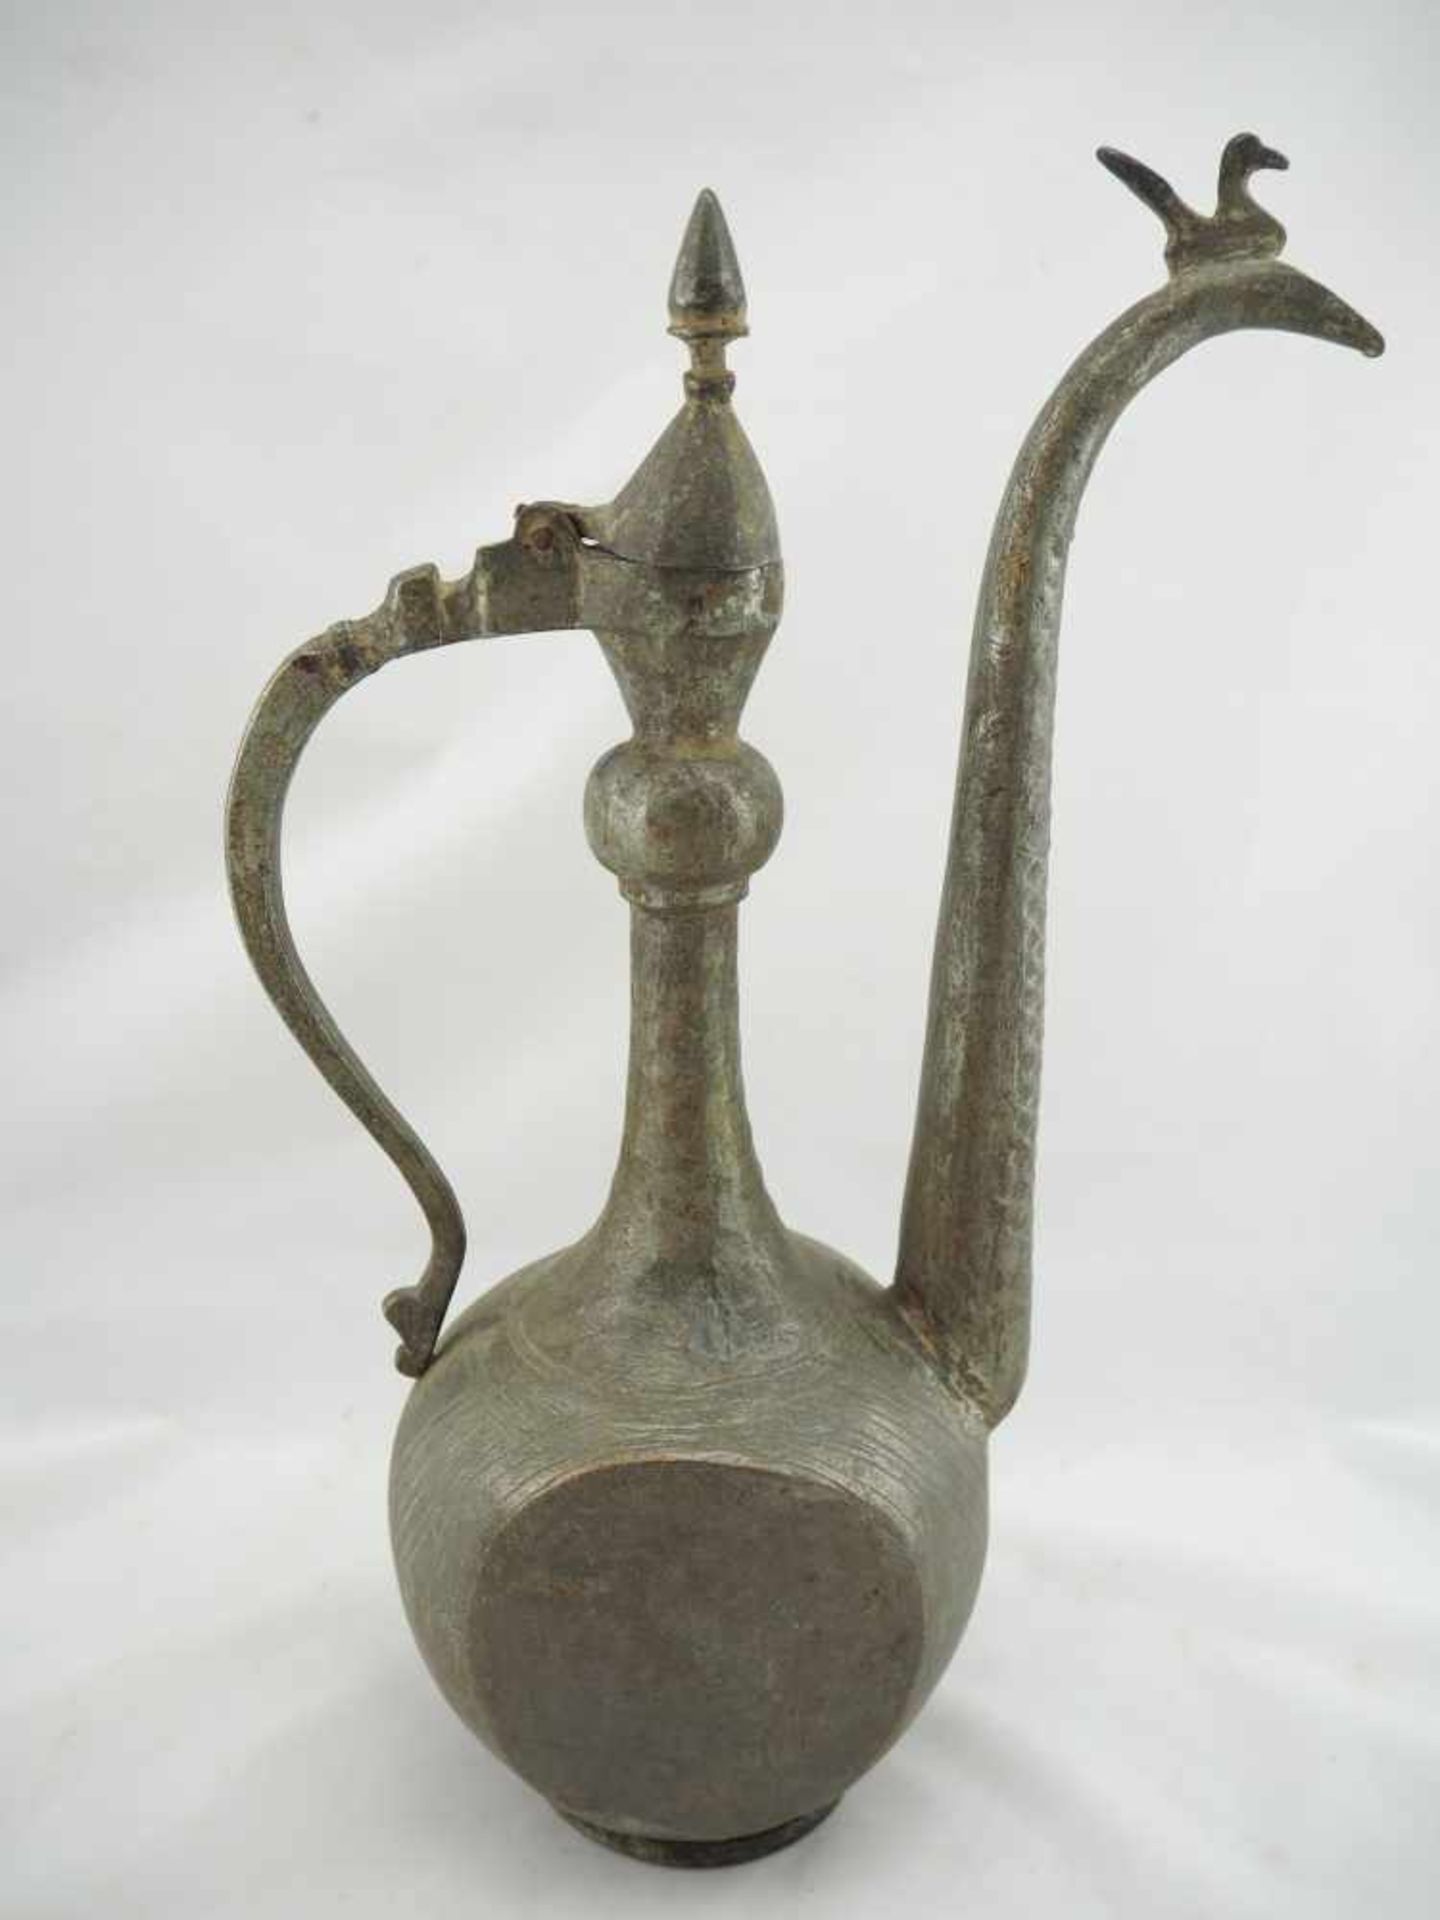 Persische TeekanneFormschöne persische Teekanne in Kupfer gearbeitet, mit schuppenförmigen, sowie